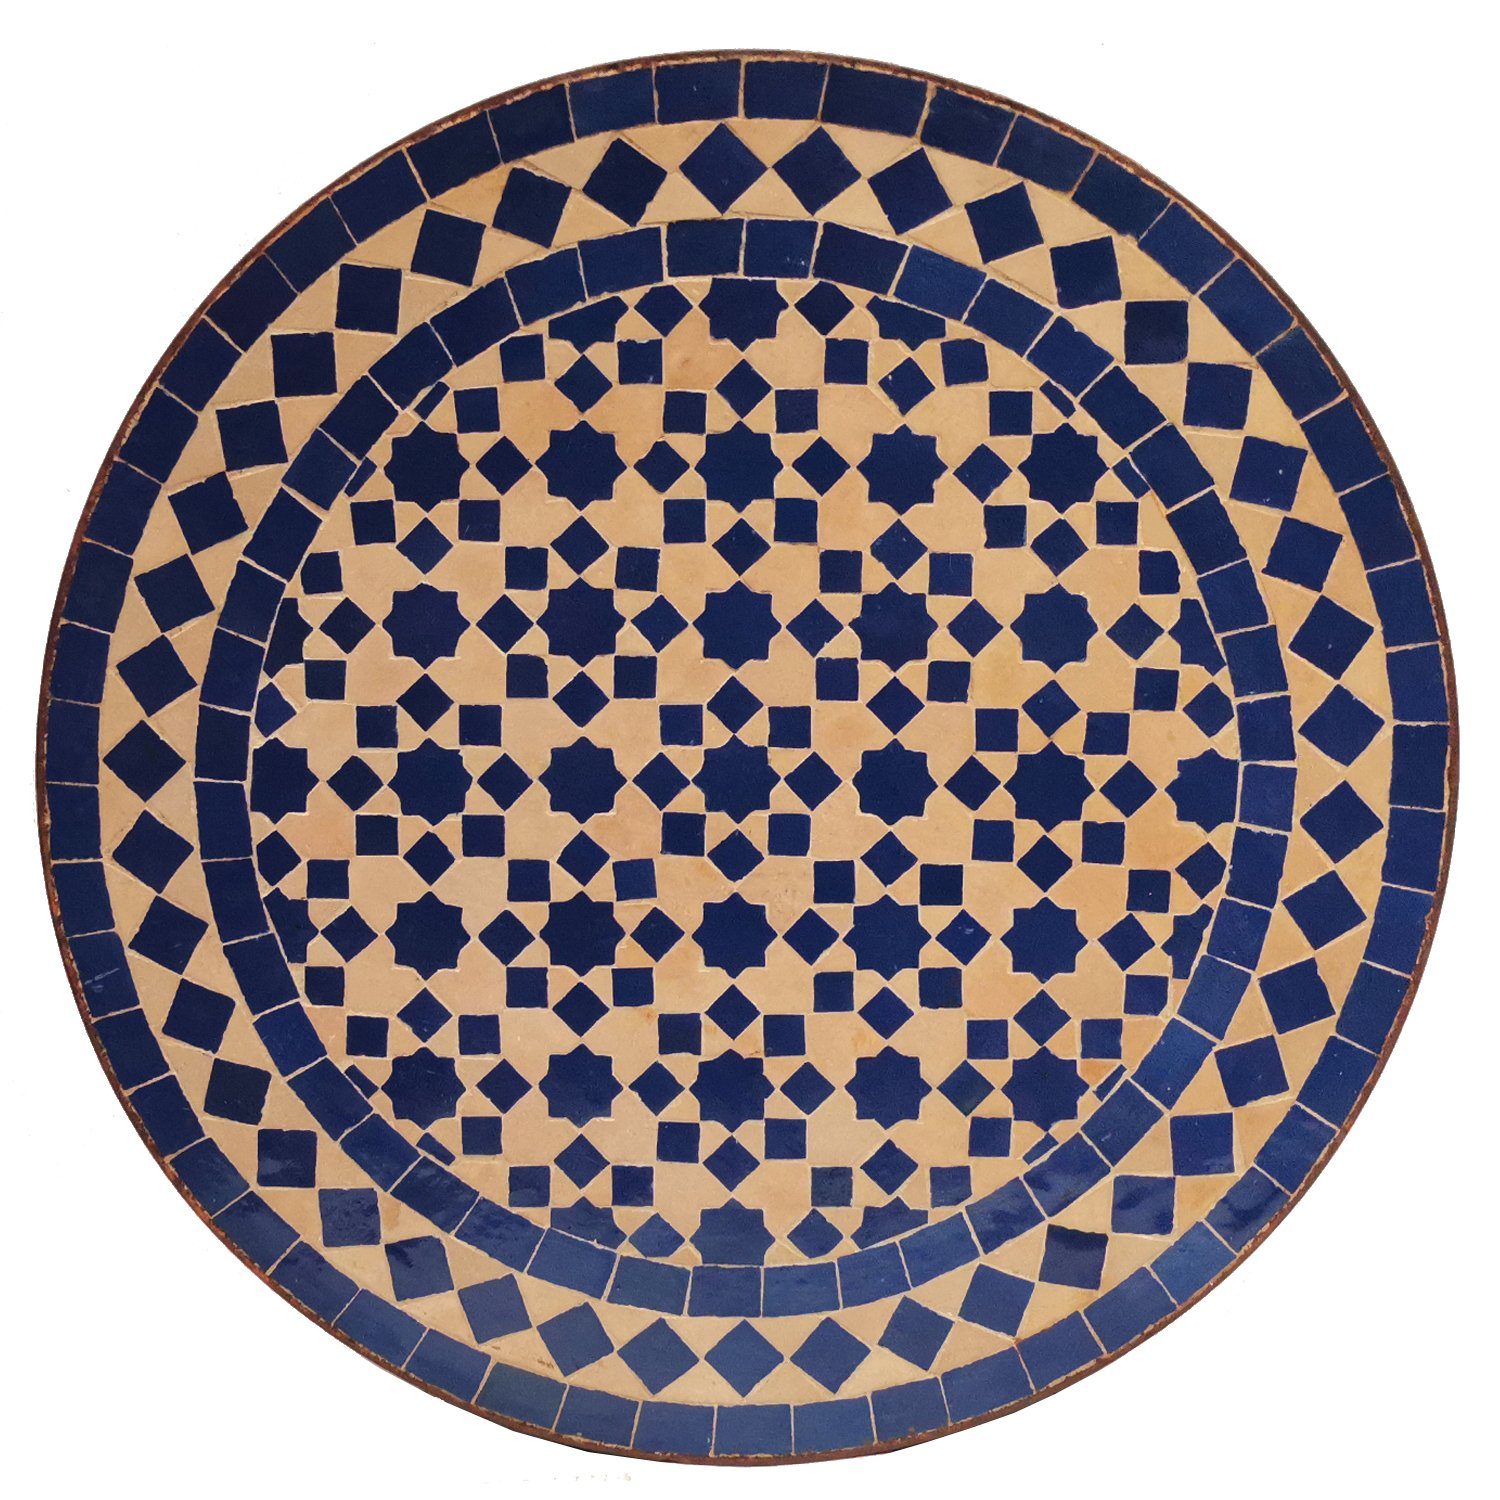 Casa Moro Beistelltisch Mosaik Beistelltisch Ø 45cm Blau Stern rund mit Schmiedeeisen Gestell (marokkanischer Mosaiktisch Bistrotisch), Boho Couchtisch Kunsthandwerk aus Marokko MT2241